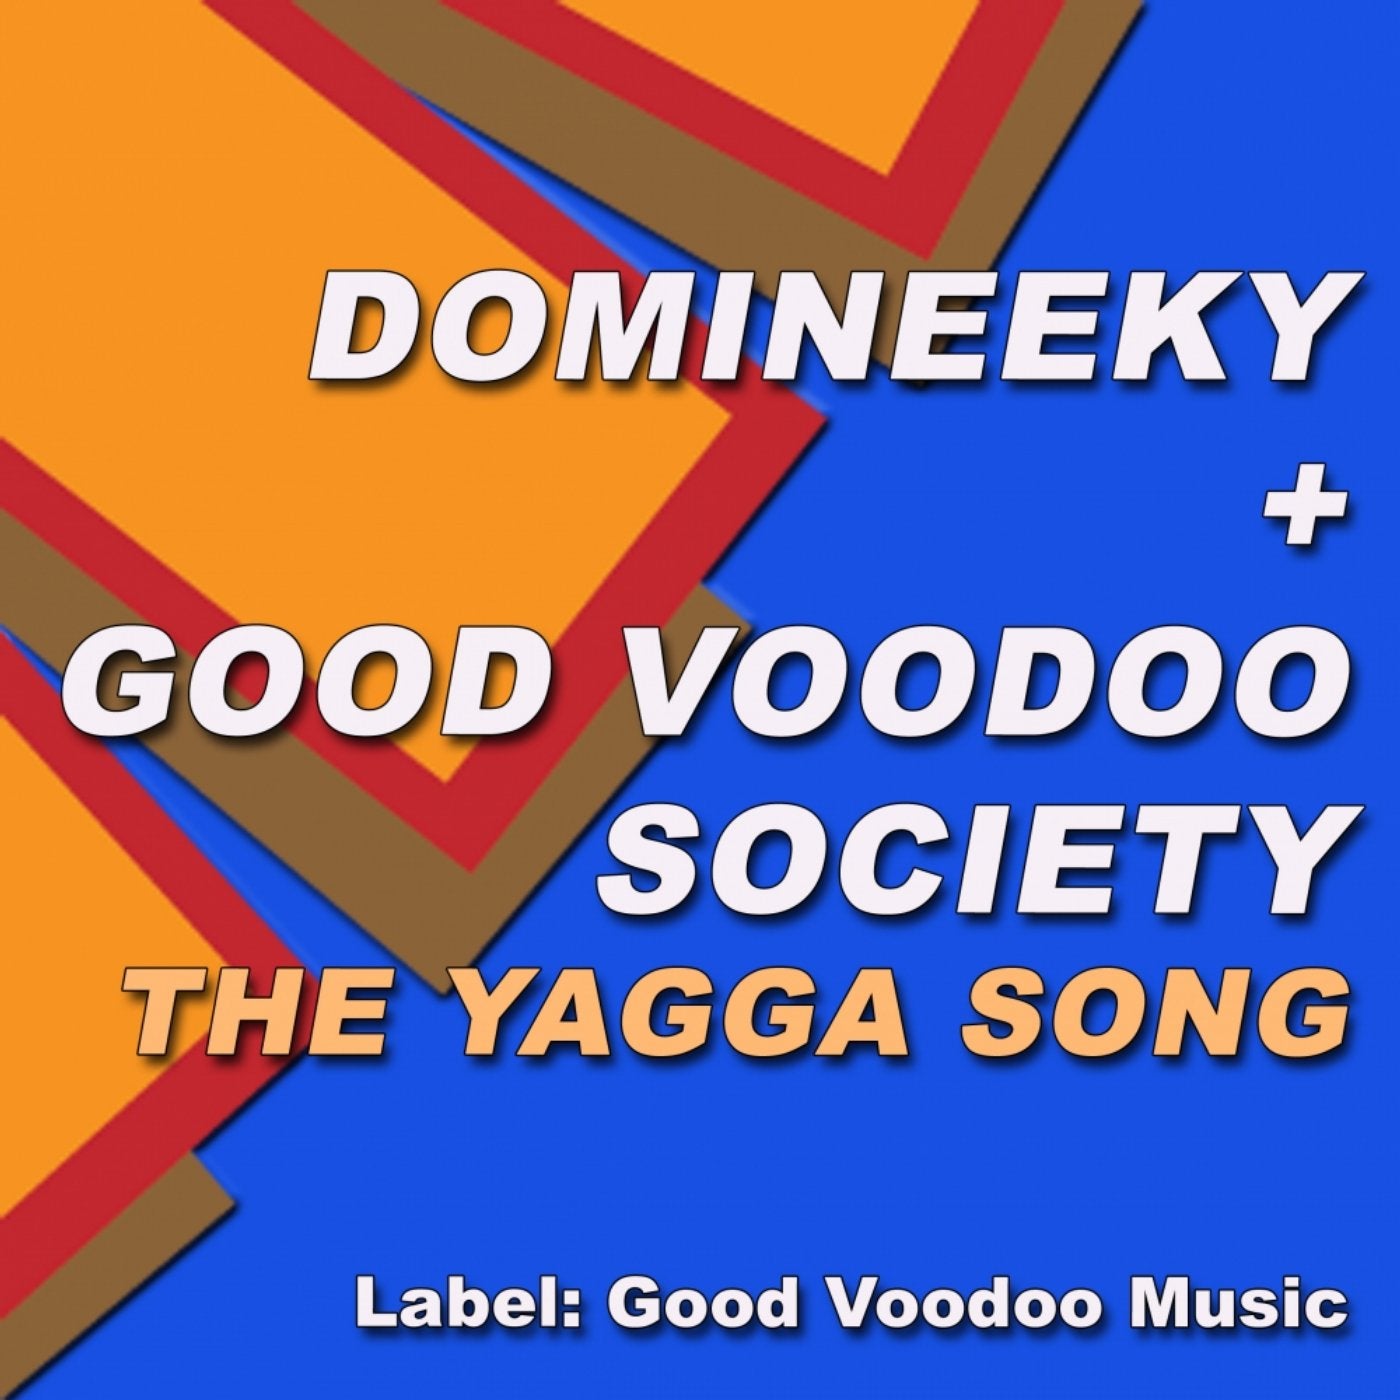 The Yagga Song